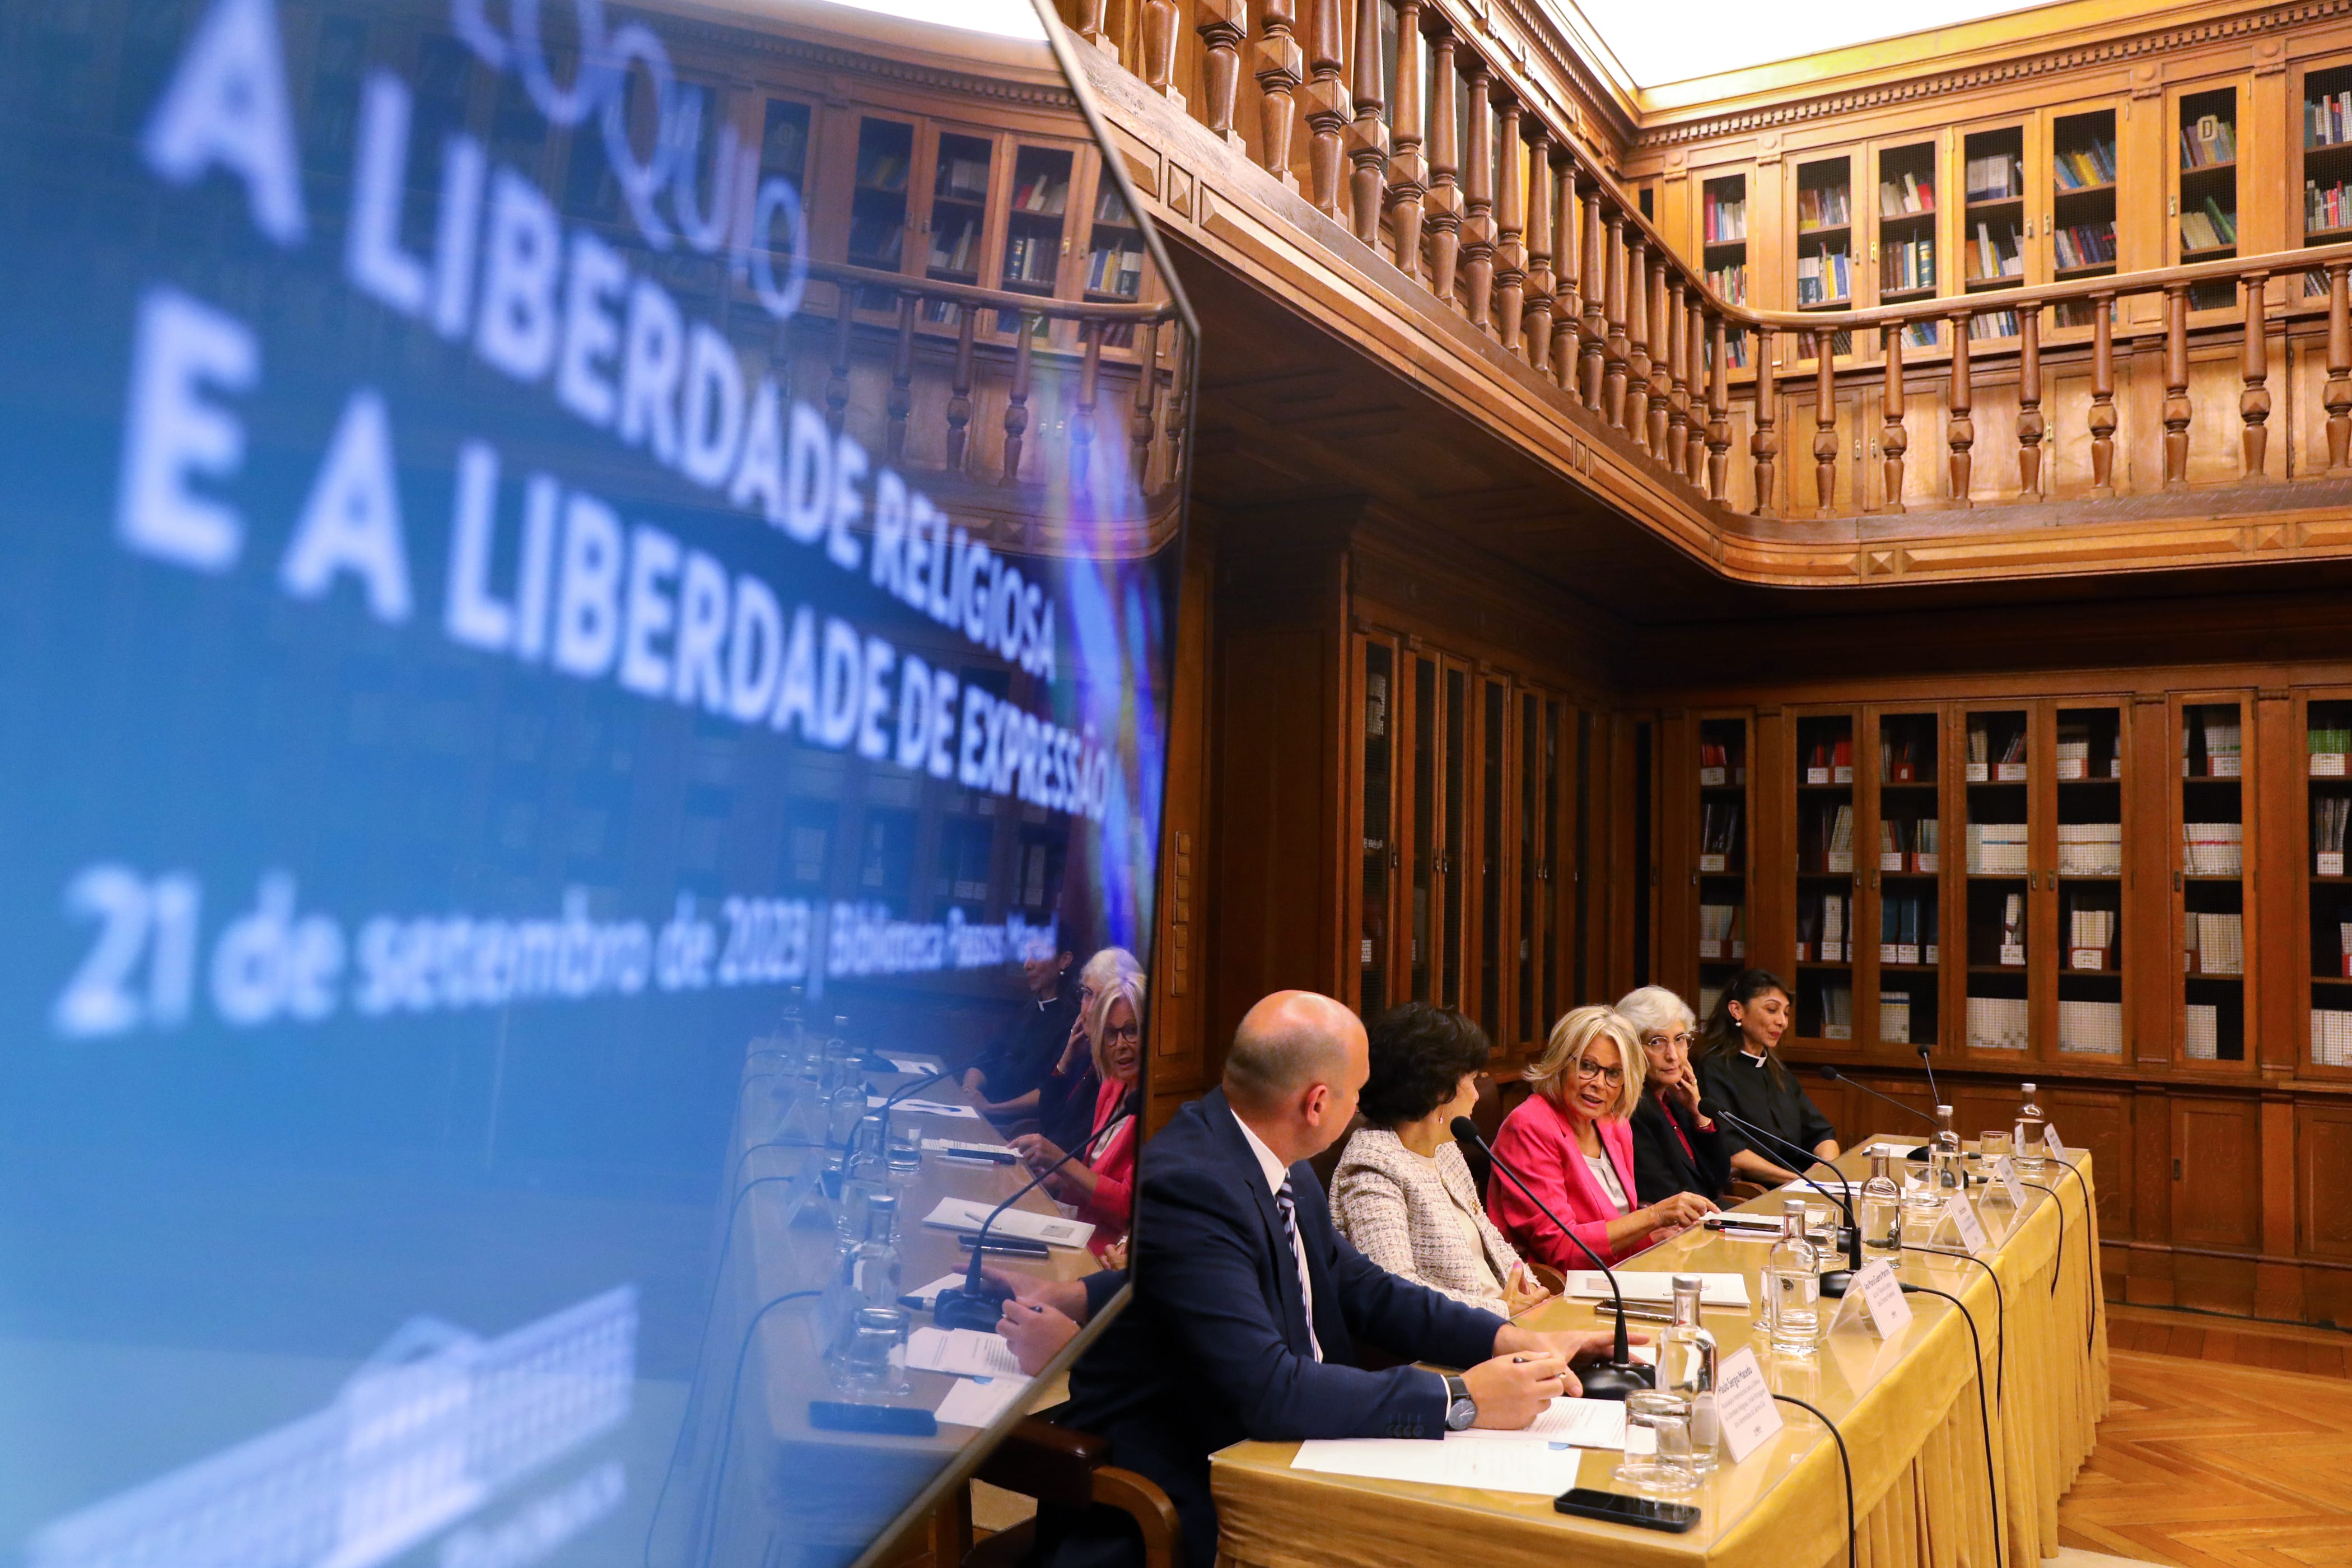 fotografia da biblioteca passos Manuel sobre o colóquio sobre a liberdade religiosa e a liberdade de expressão com oradores sentados na mesa